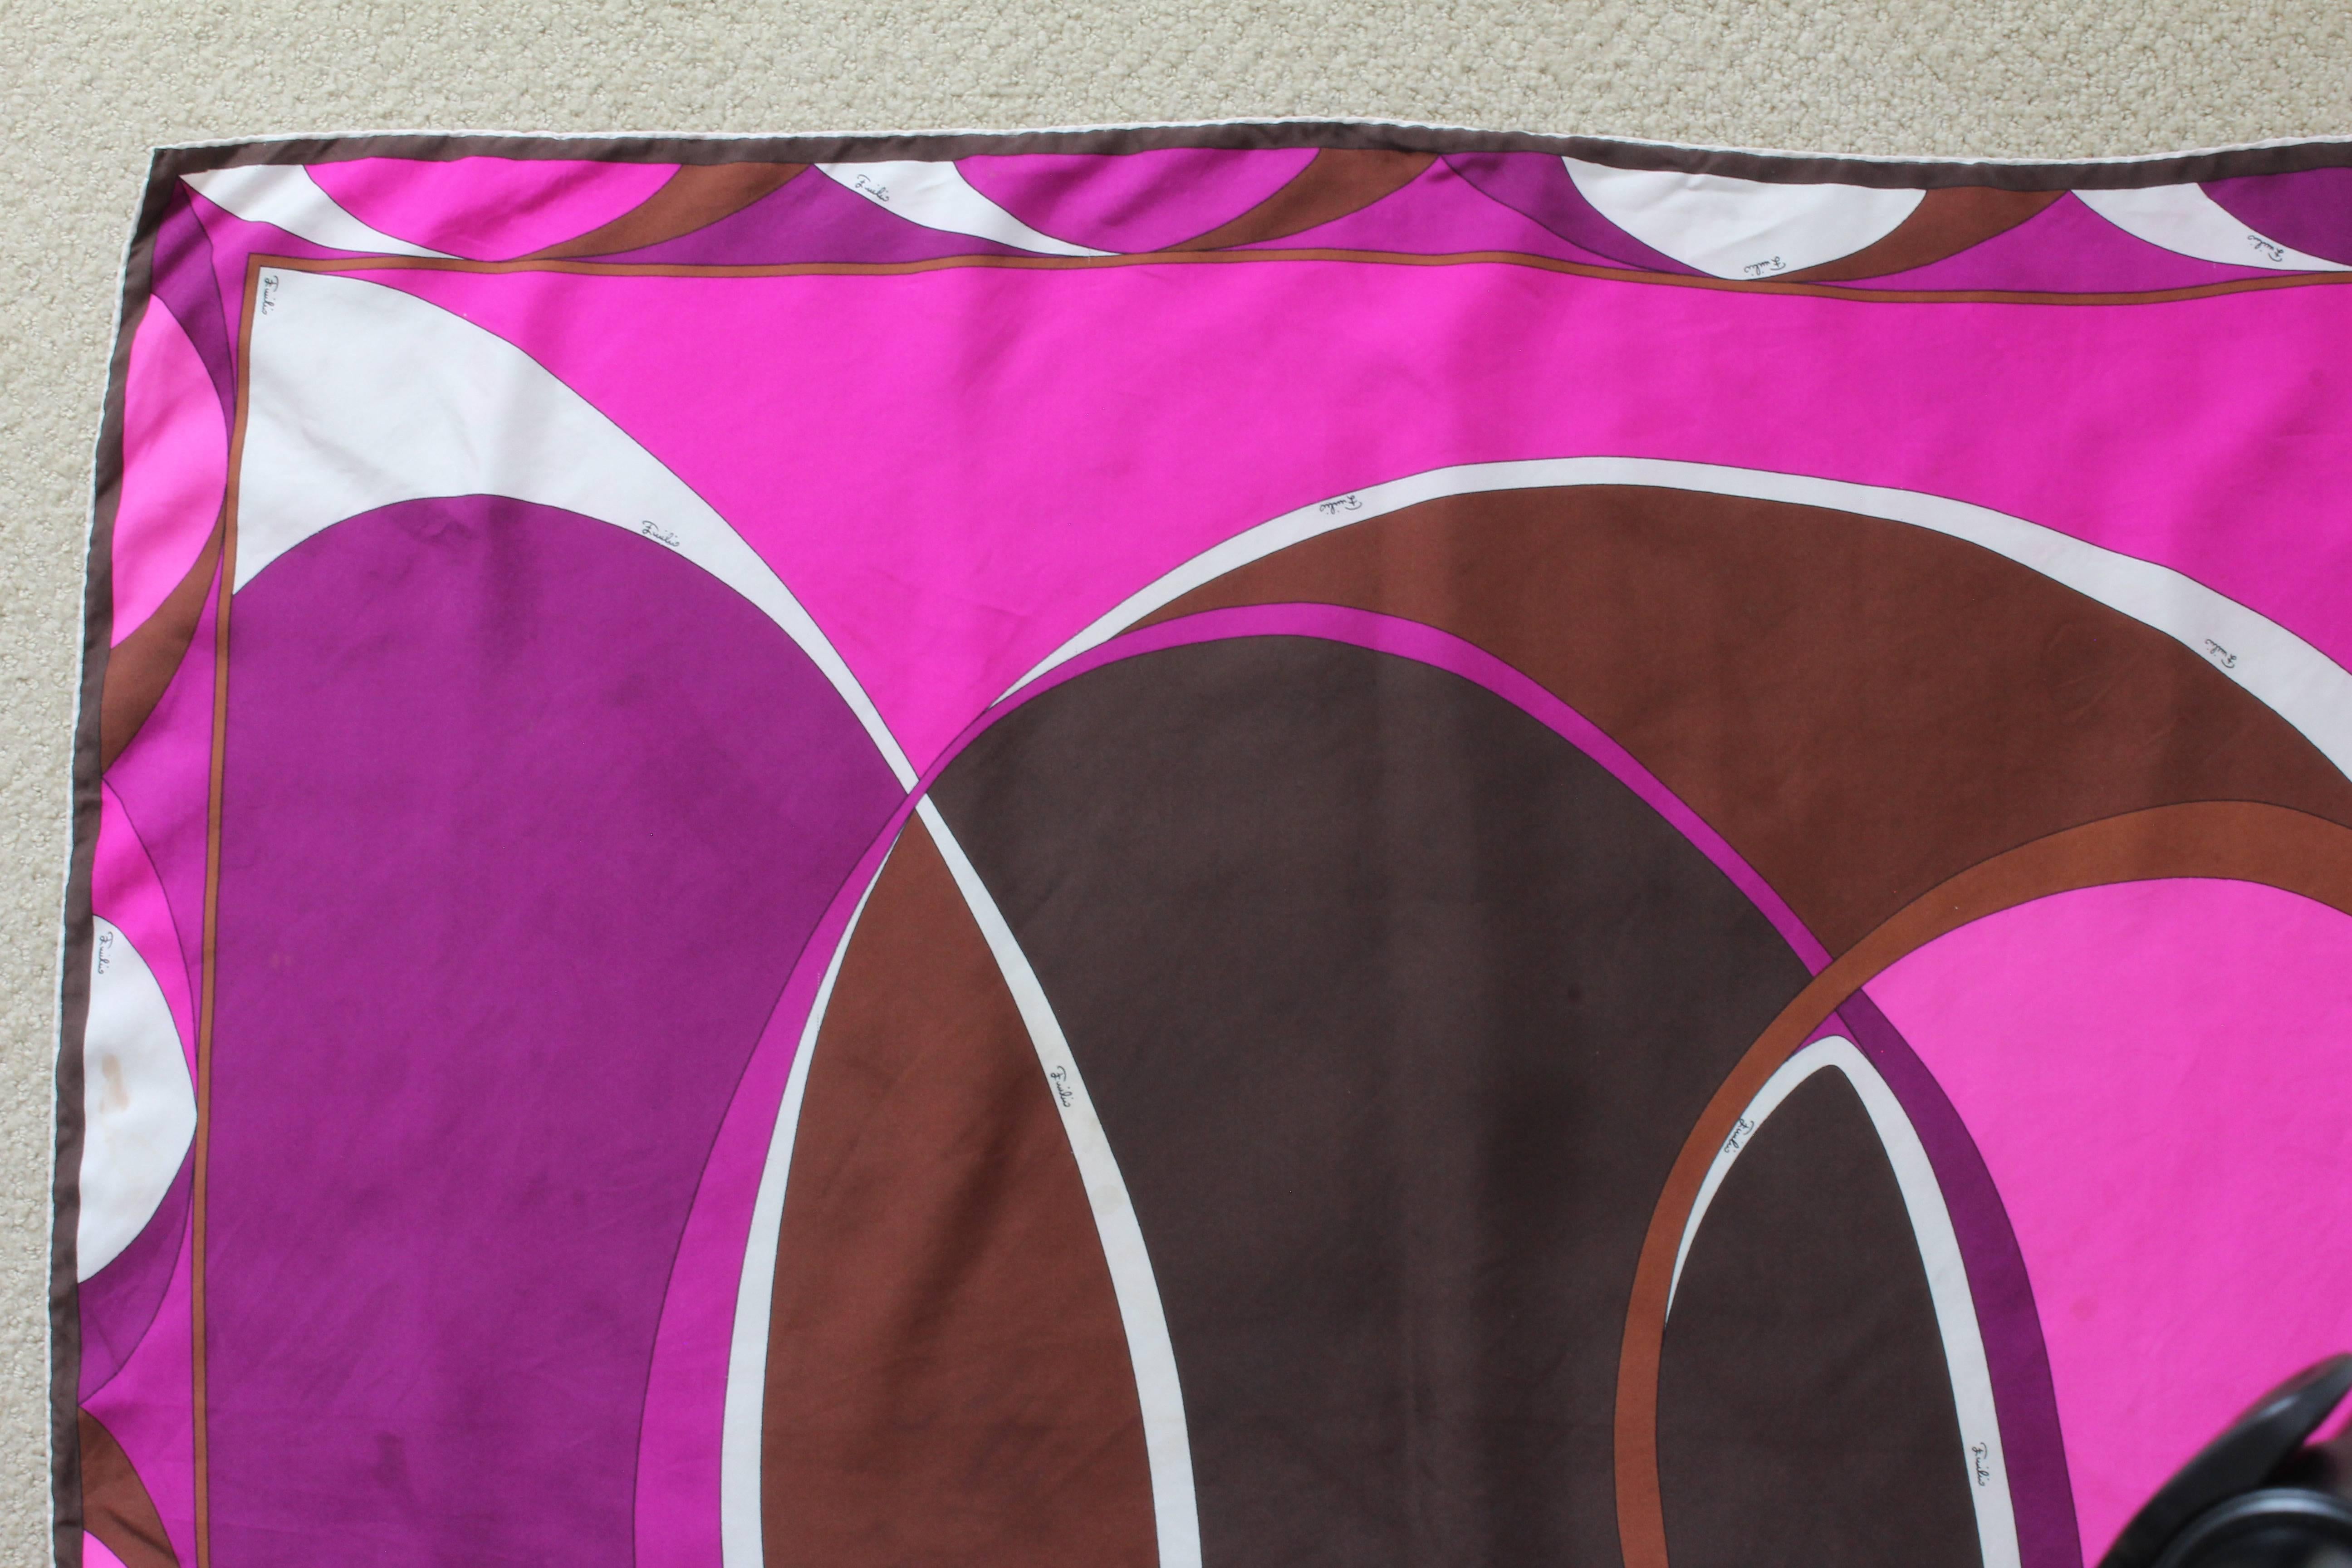 Cette écharpe colorée a été réalisée par Emilio Pucci, très probablement dans les années 1980. Confectionné en sergé de soie, il présente un motif abstrait dans les tons marron, violet, rose et blanc, et des ourlets roulés à la main.  

Les couleurs